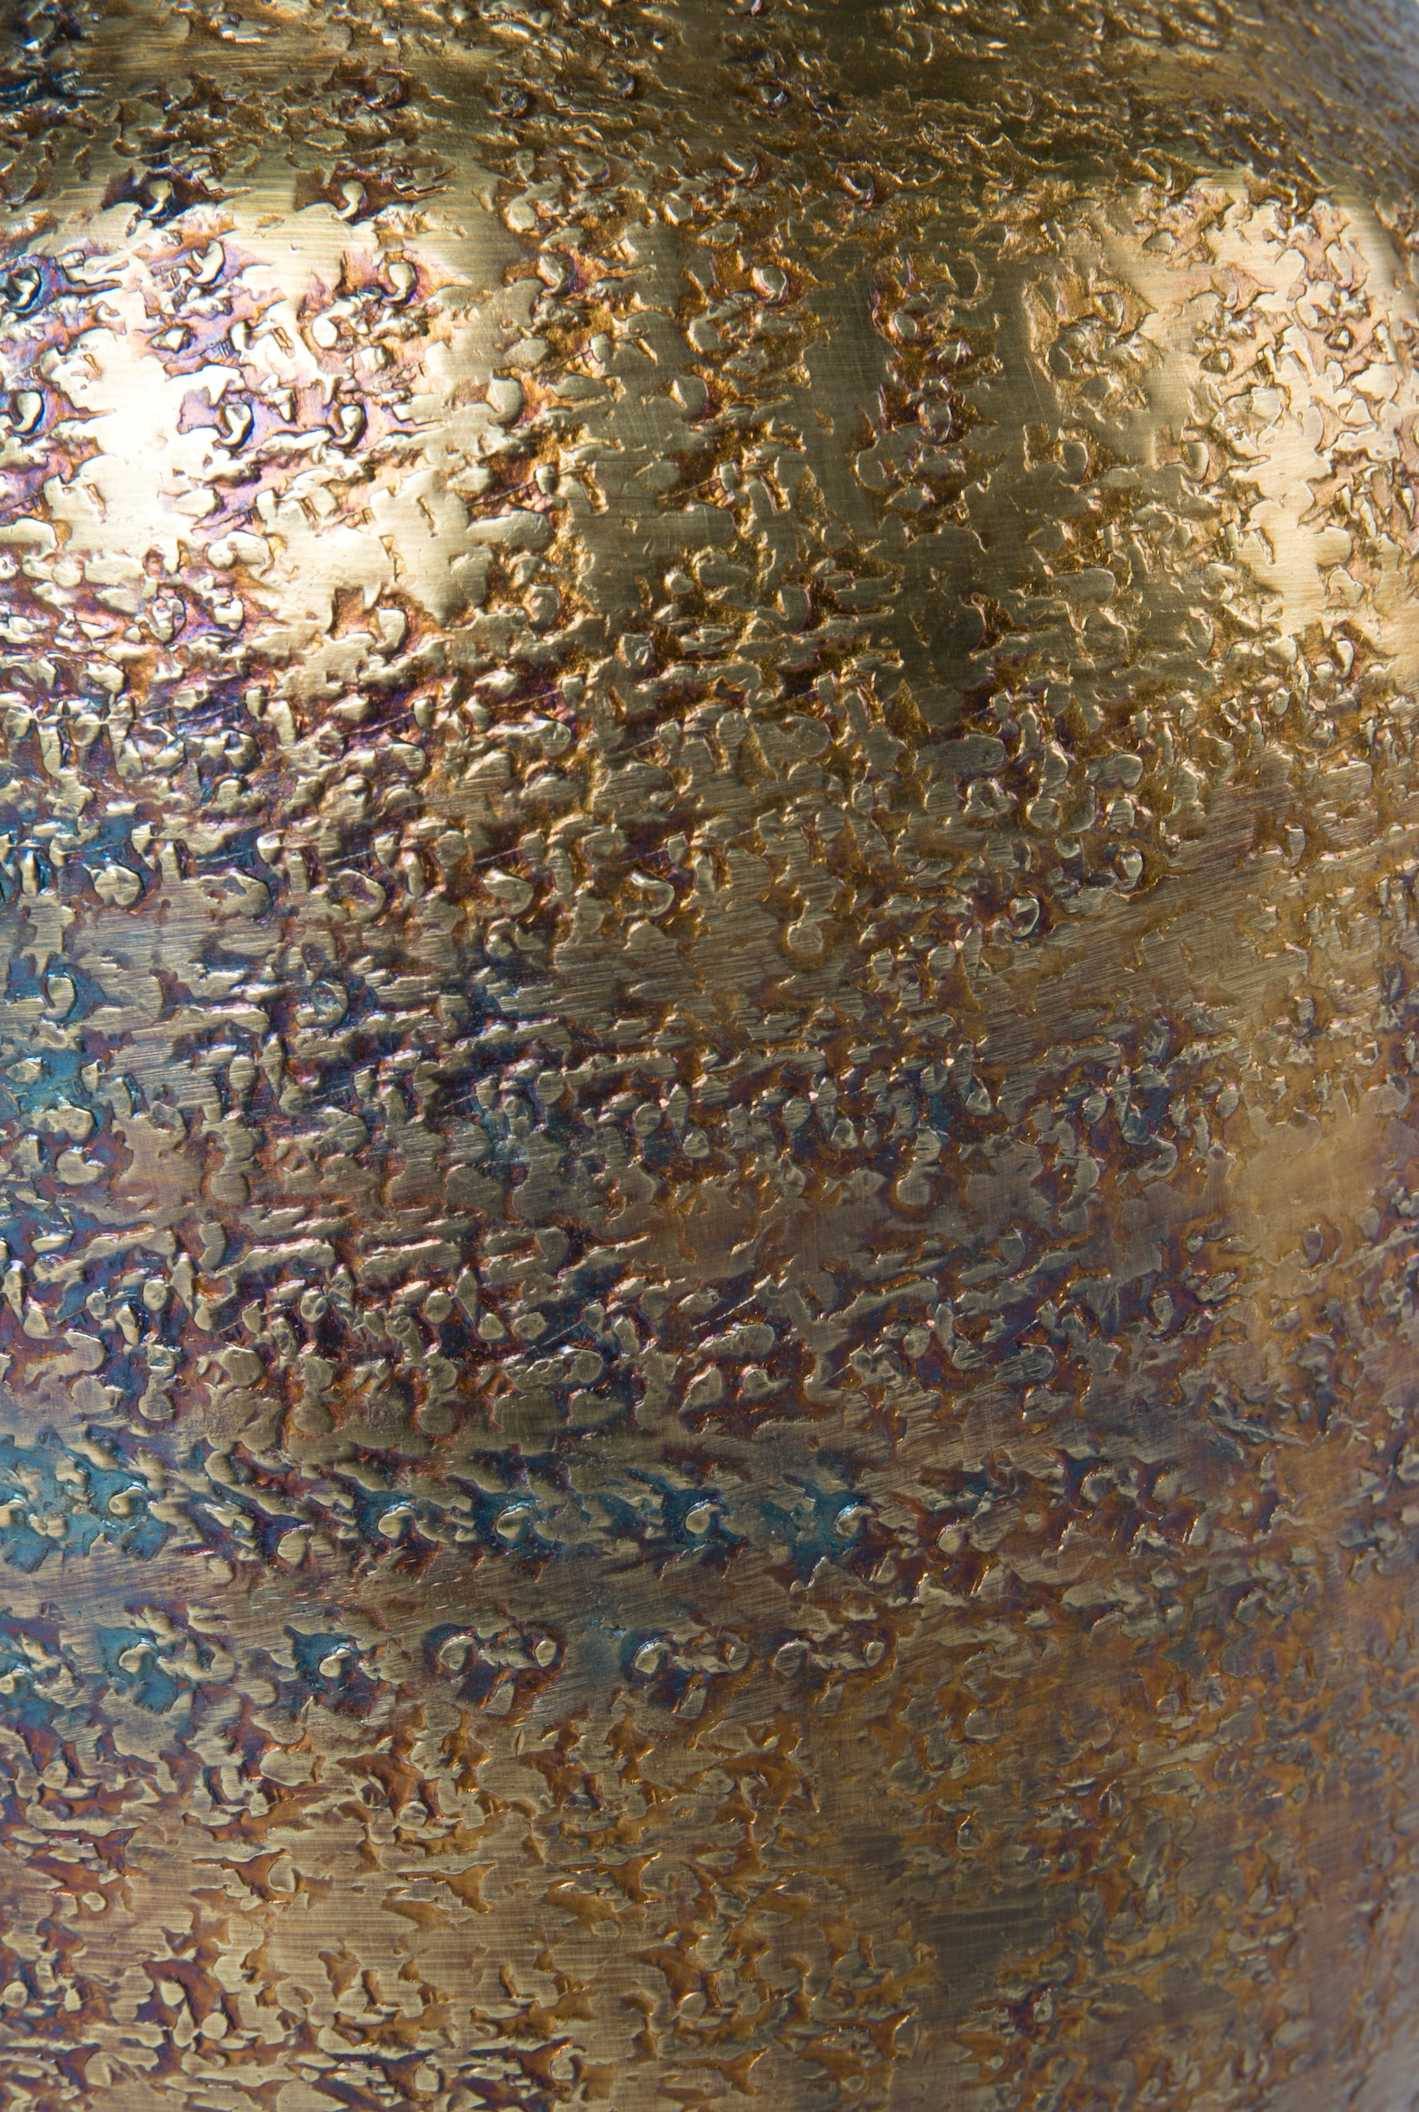 Vase de décoration bohème BAHIR - Dutchbone